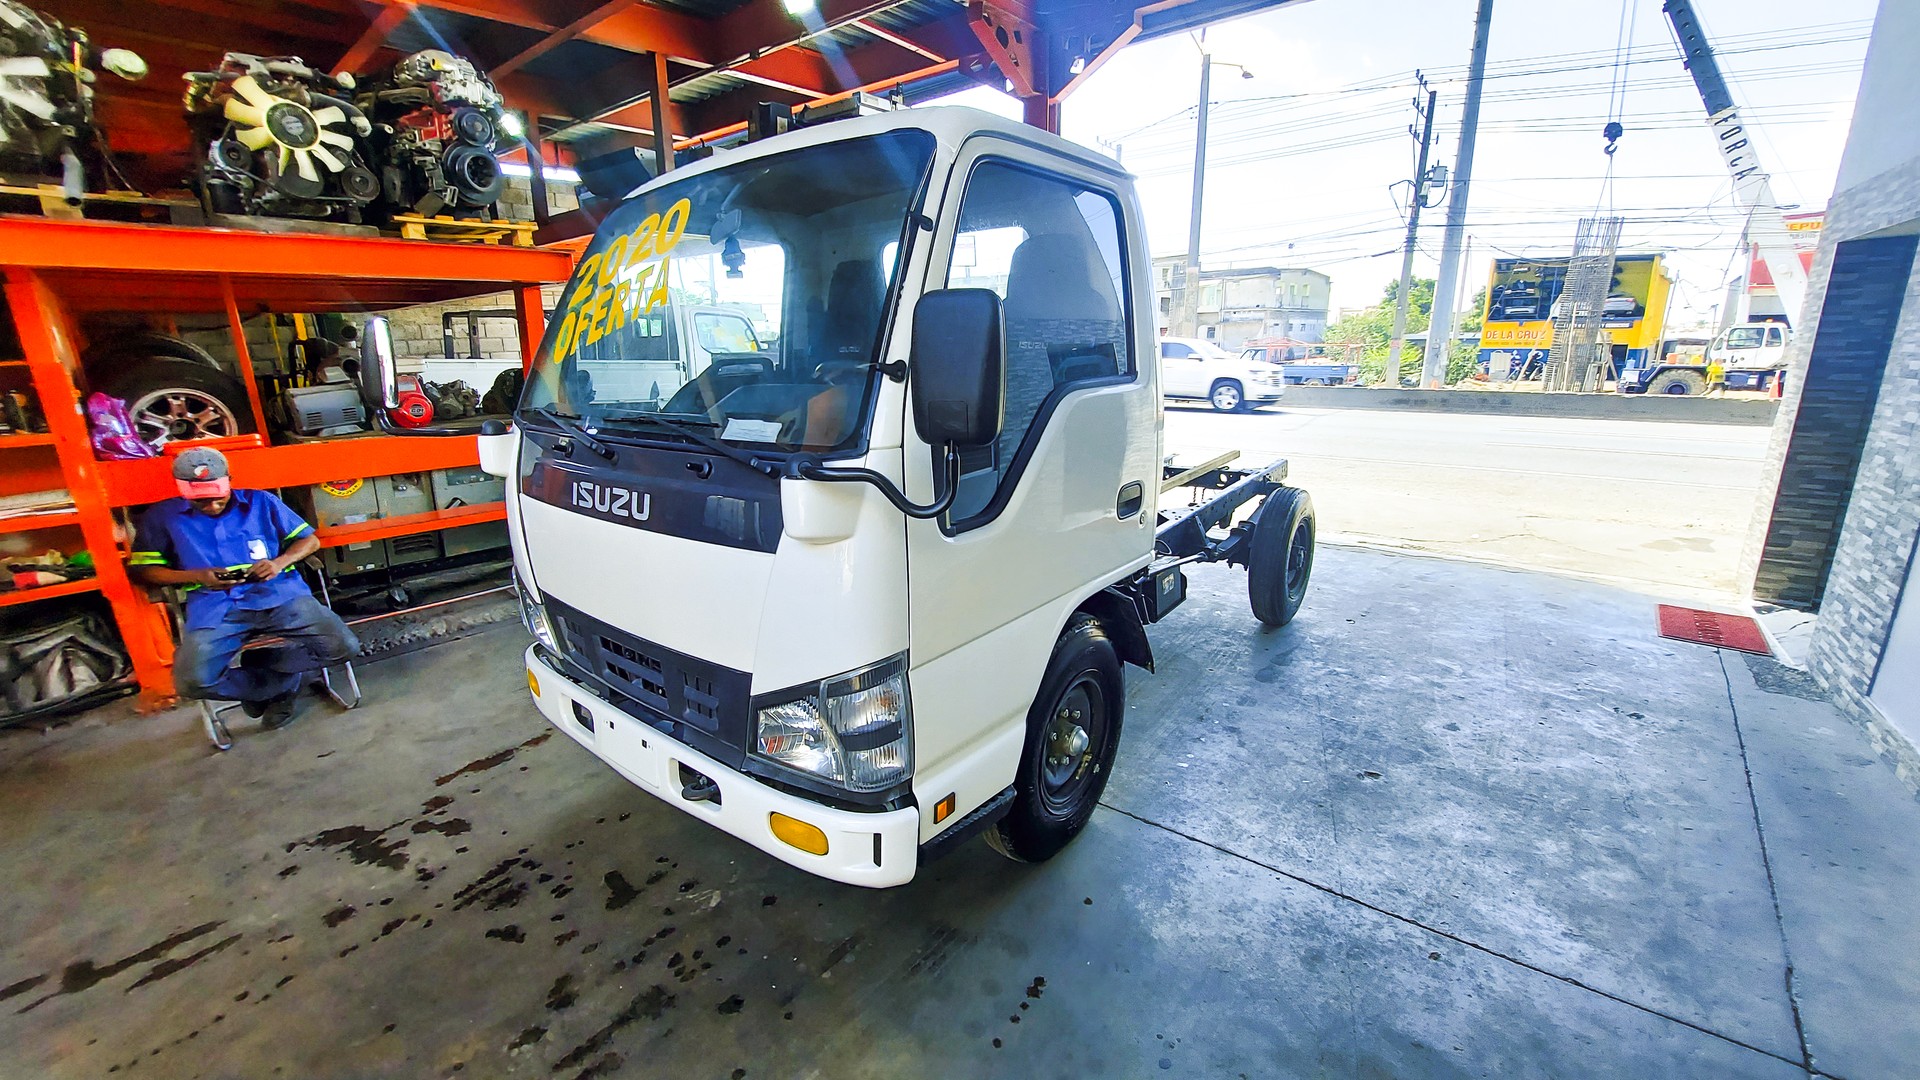 camiones y vehiculos pesados - Camión Isuzu QKR 2020
$1,100,000
Financiamiento Disponible